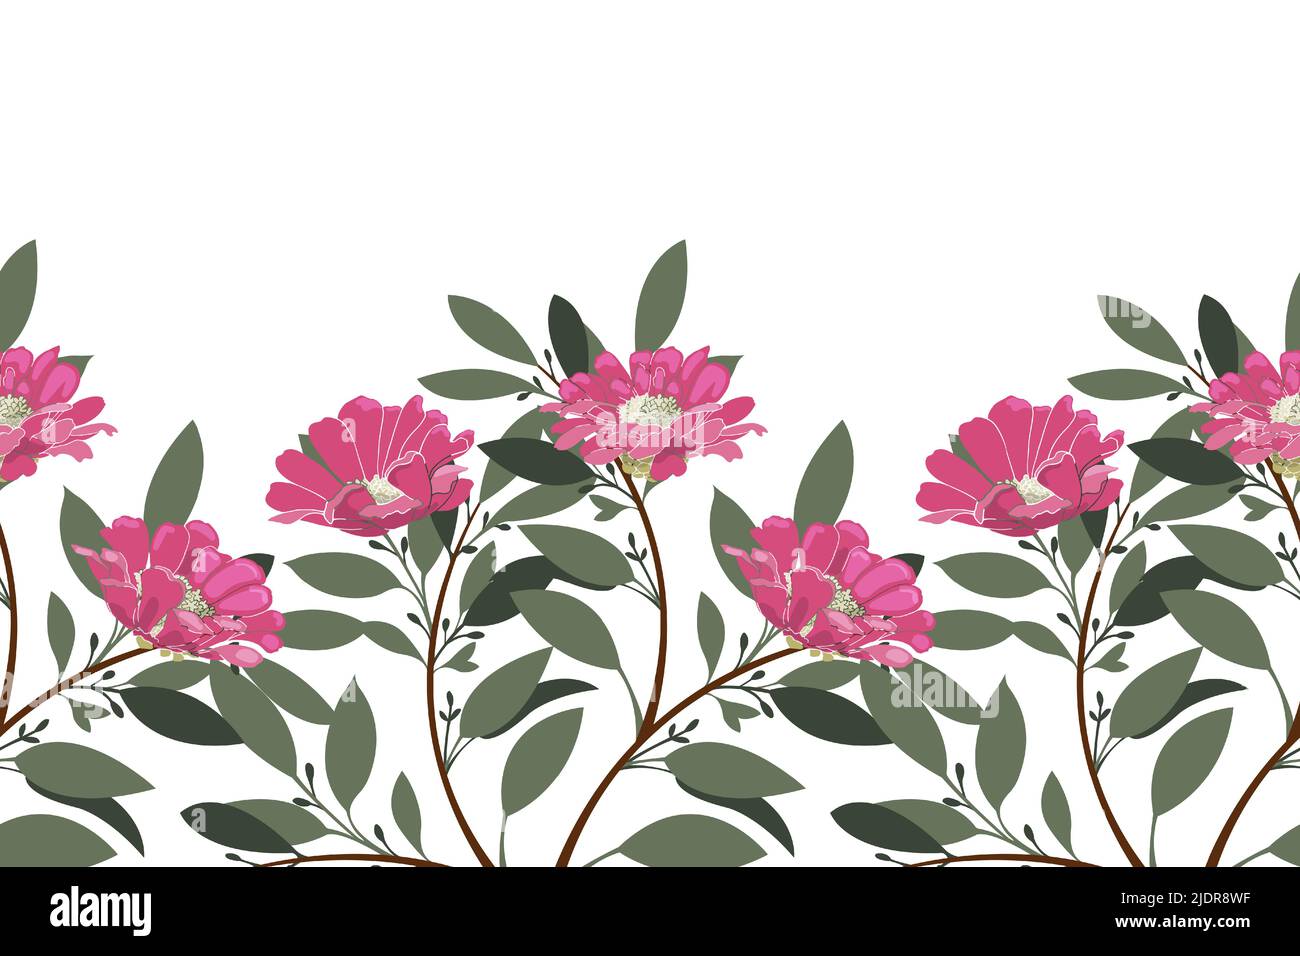 Motif fleuri vectoriel sans couture, bordure. Design horizontal panoramique avec fleurs roses et feuilles vertes sur fond blanc. Illustration de Vecteur